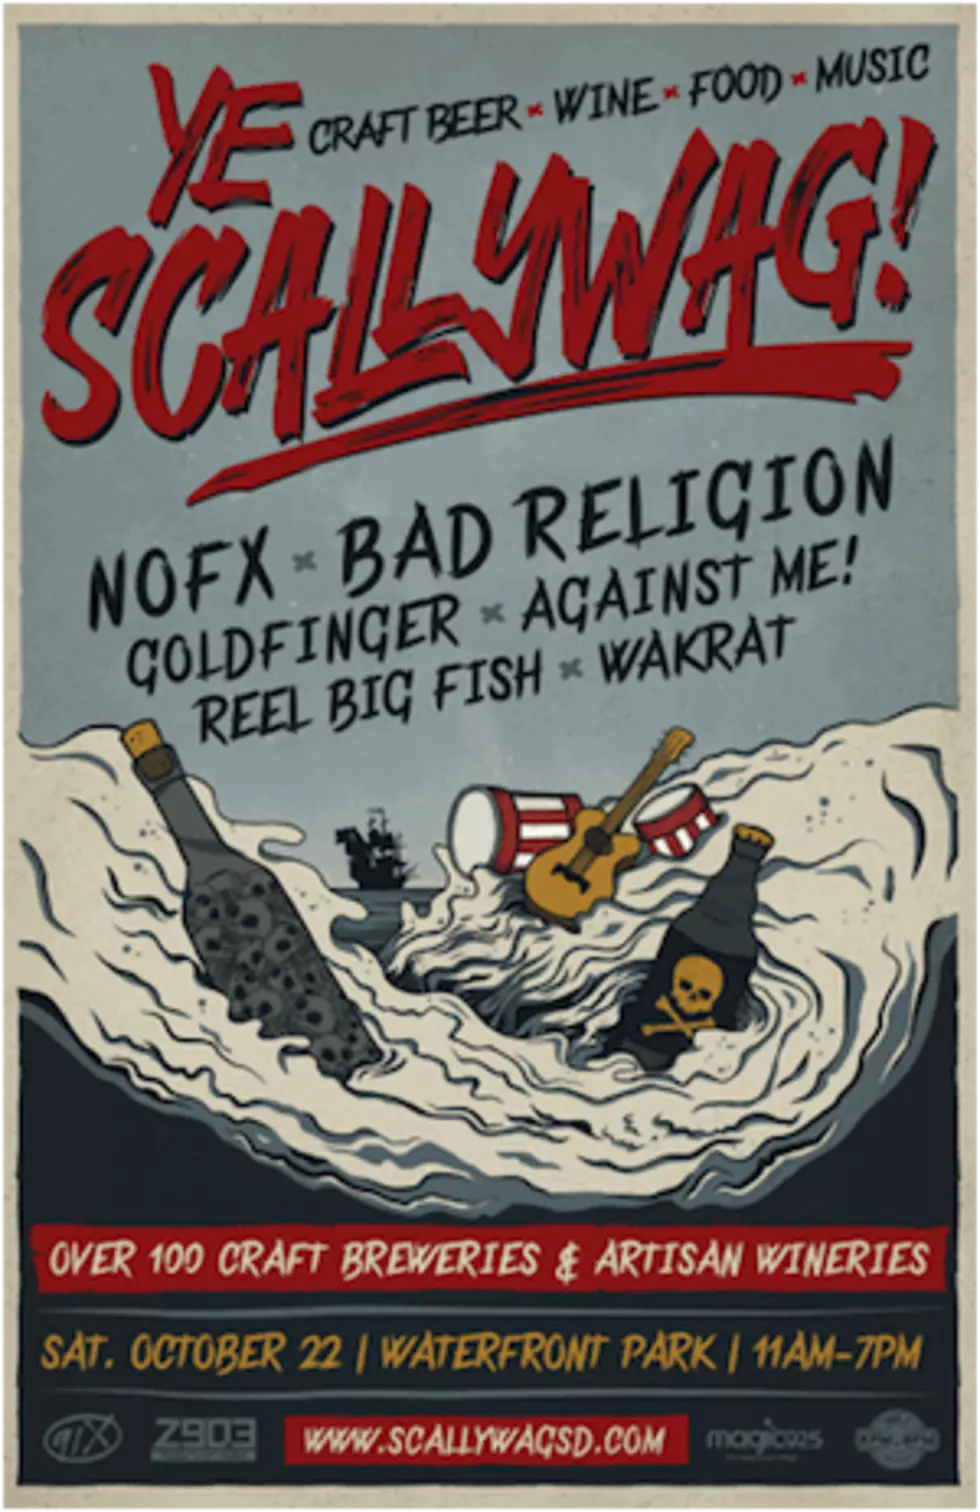 NOFX + Bad Religion Lead Inaugural Ye Scallywag! Festival